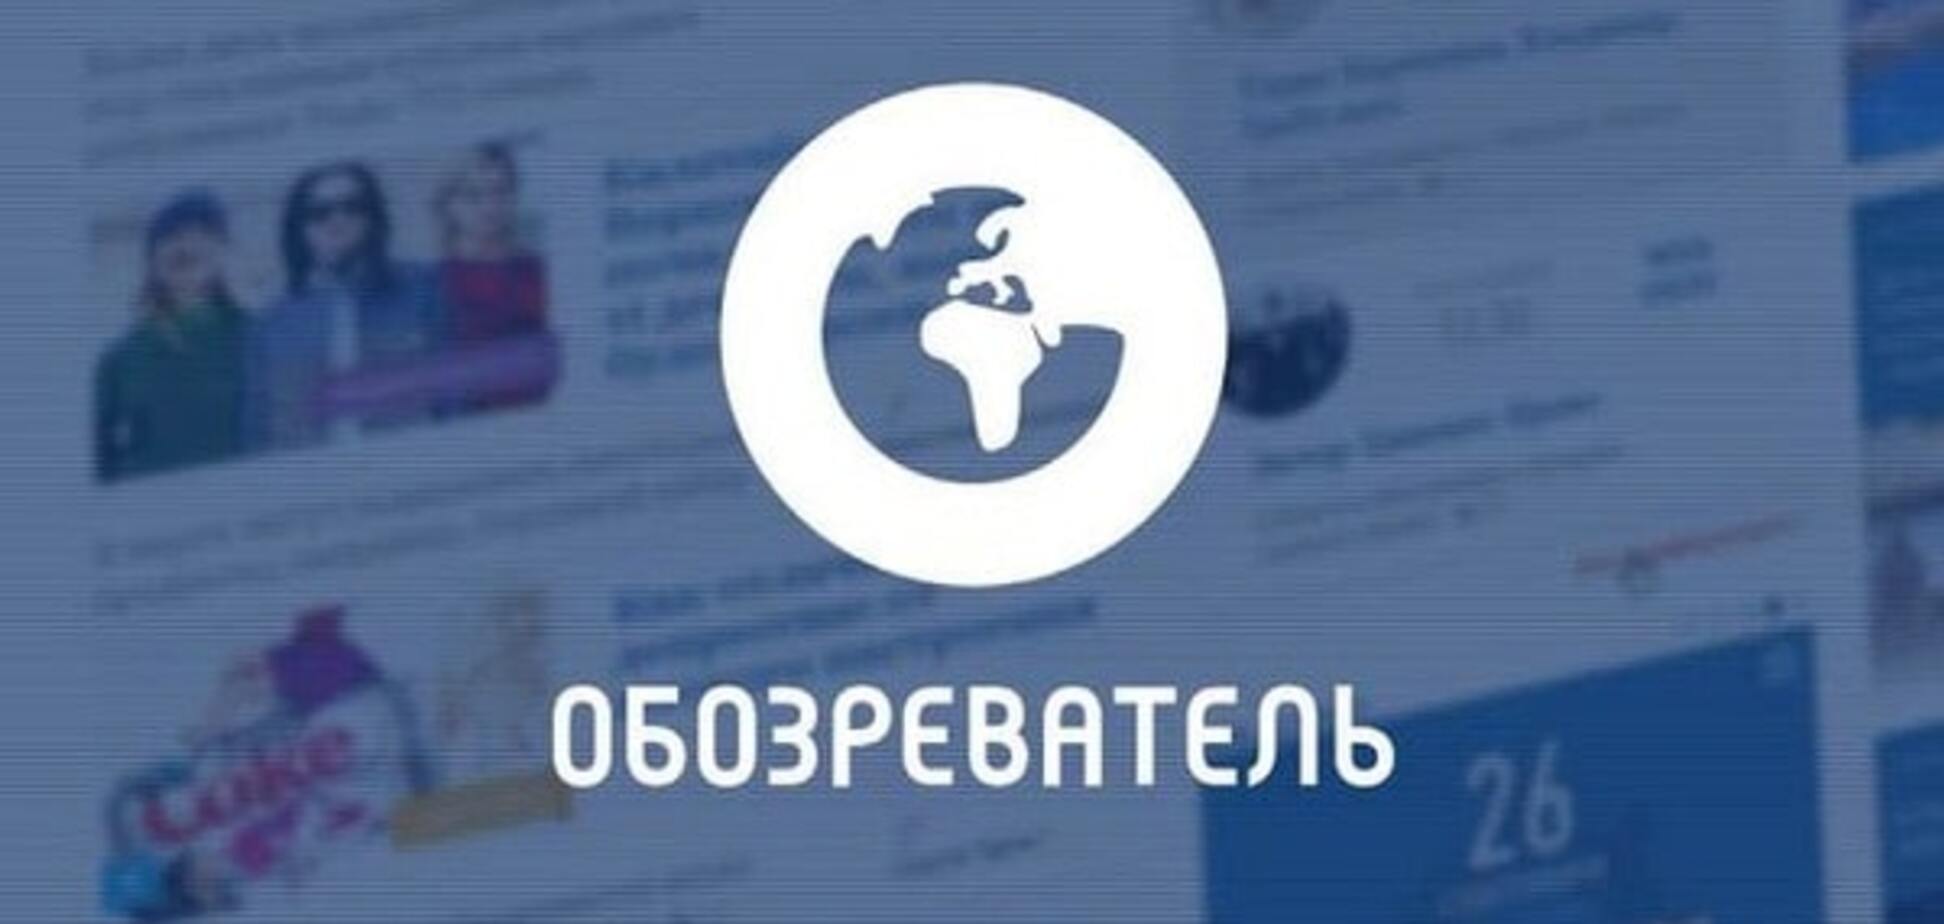 'Захищають дітей': у 'ЛНР' заблокували 'Обозреватель' і ще 112 сайтів. Опублікований повний список